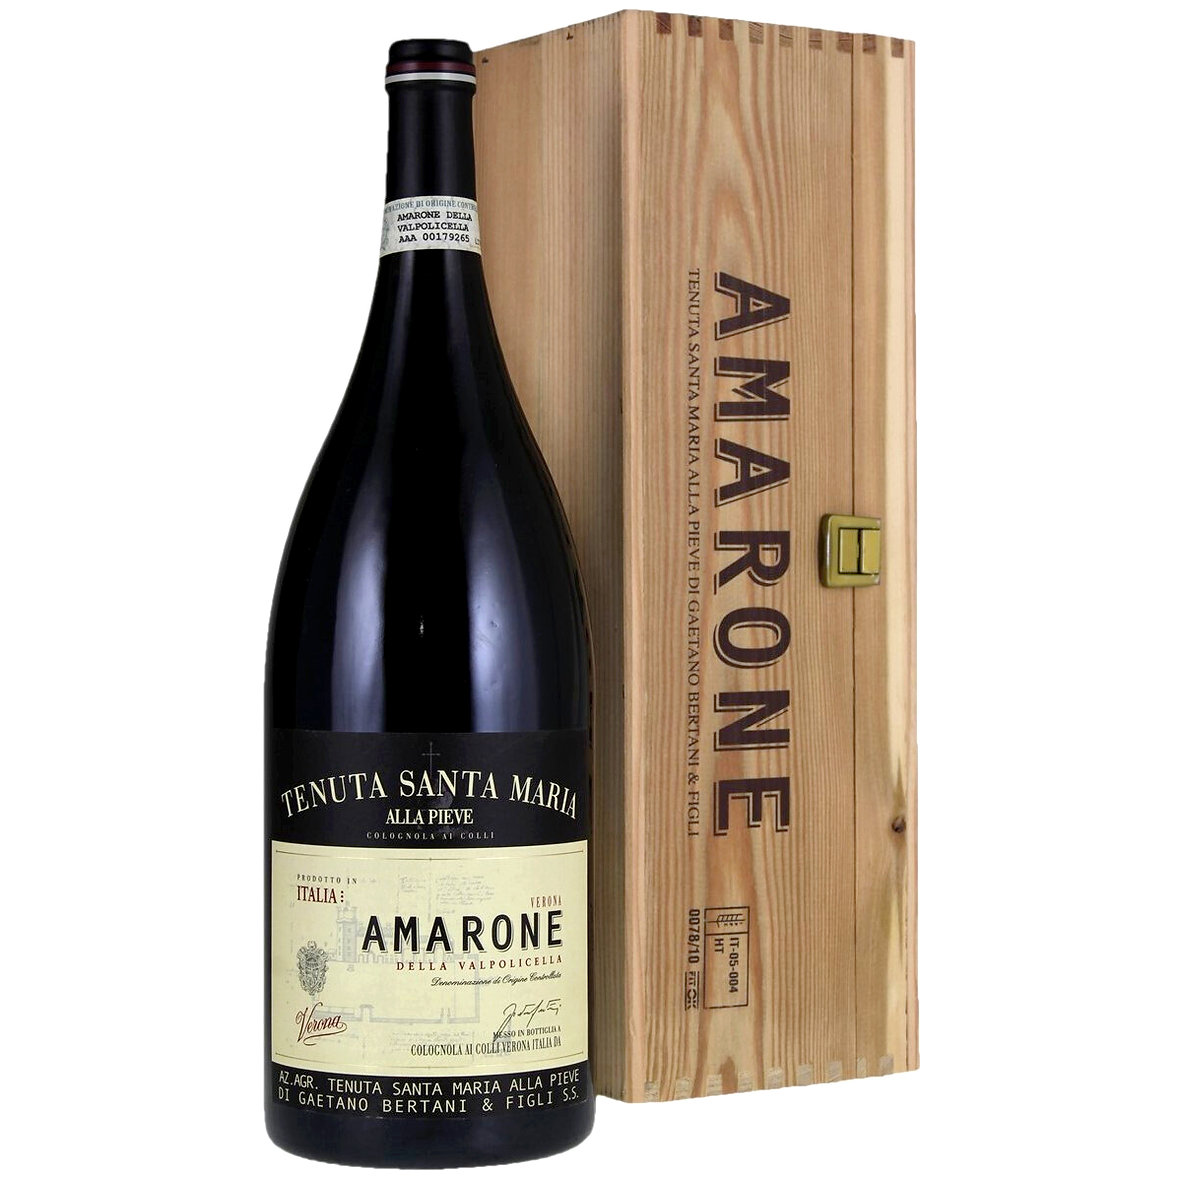 Tenuta Santa Maria Amarone della Valpolicella Classico Riserva DOCG 2015 Magnum 1.5L Red Wine – Veneto, Italy